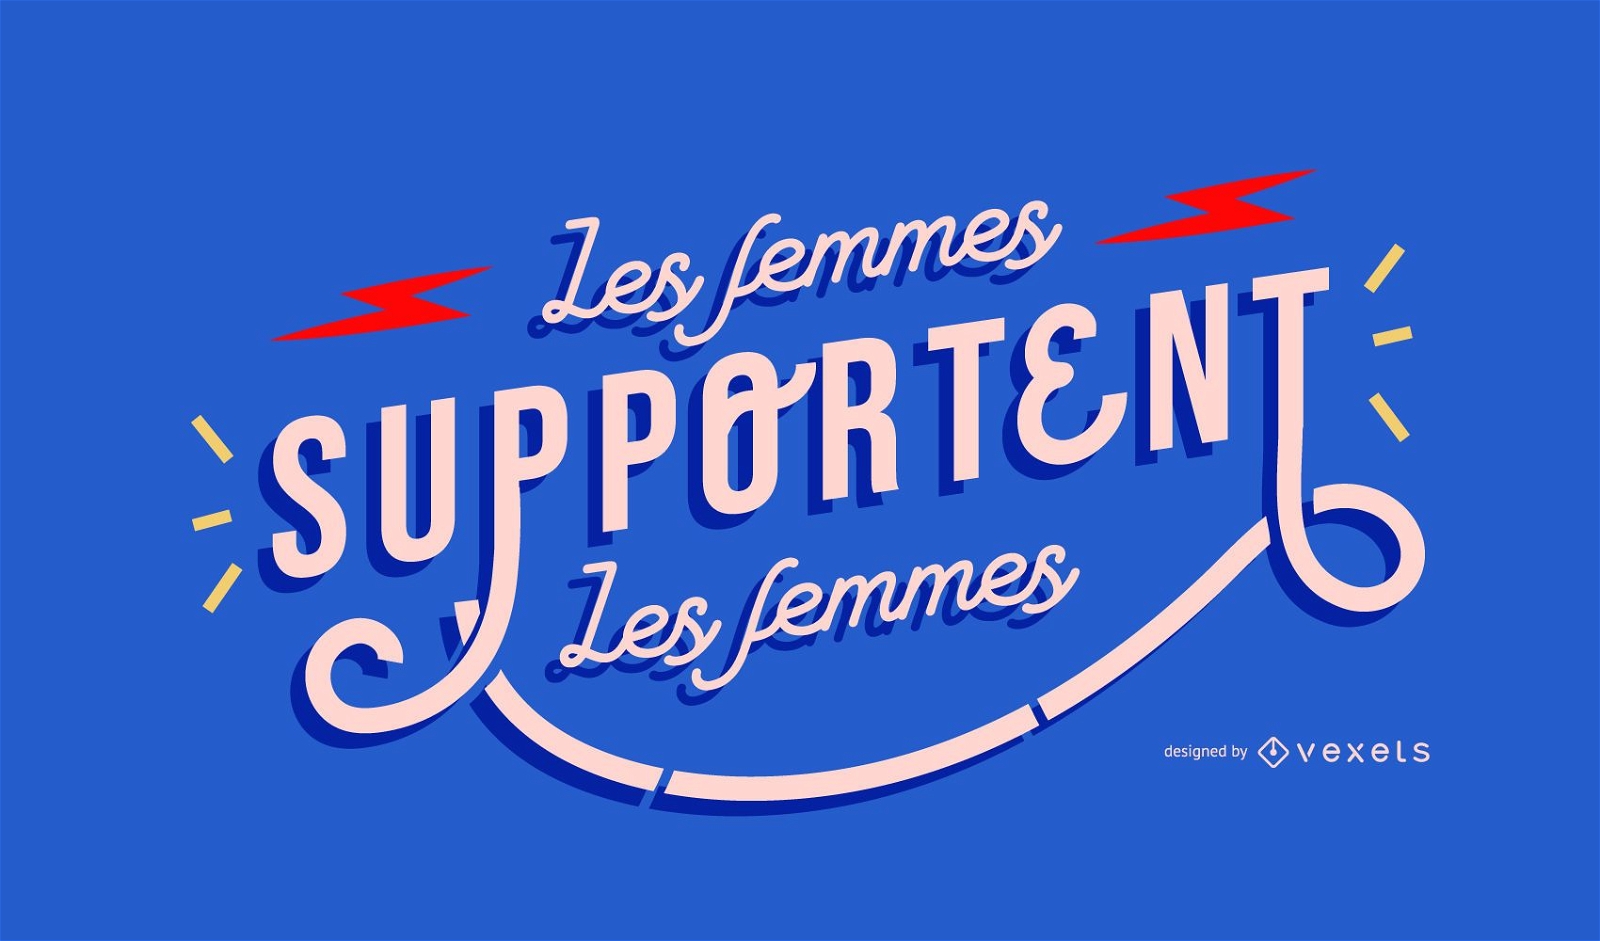 Frauen unterstützen französisches Schriftdesign